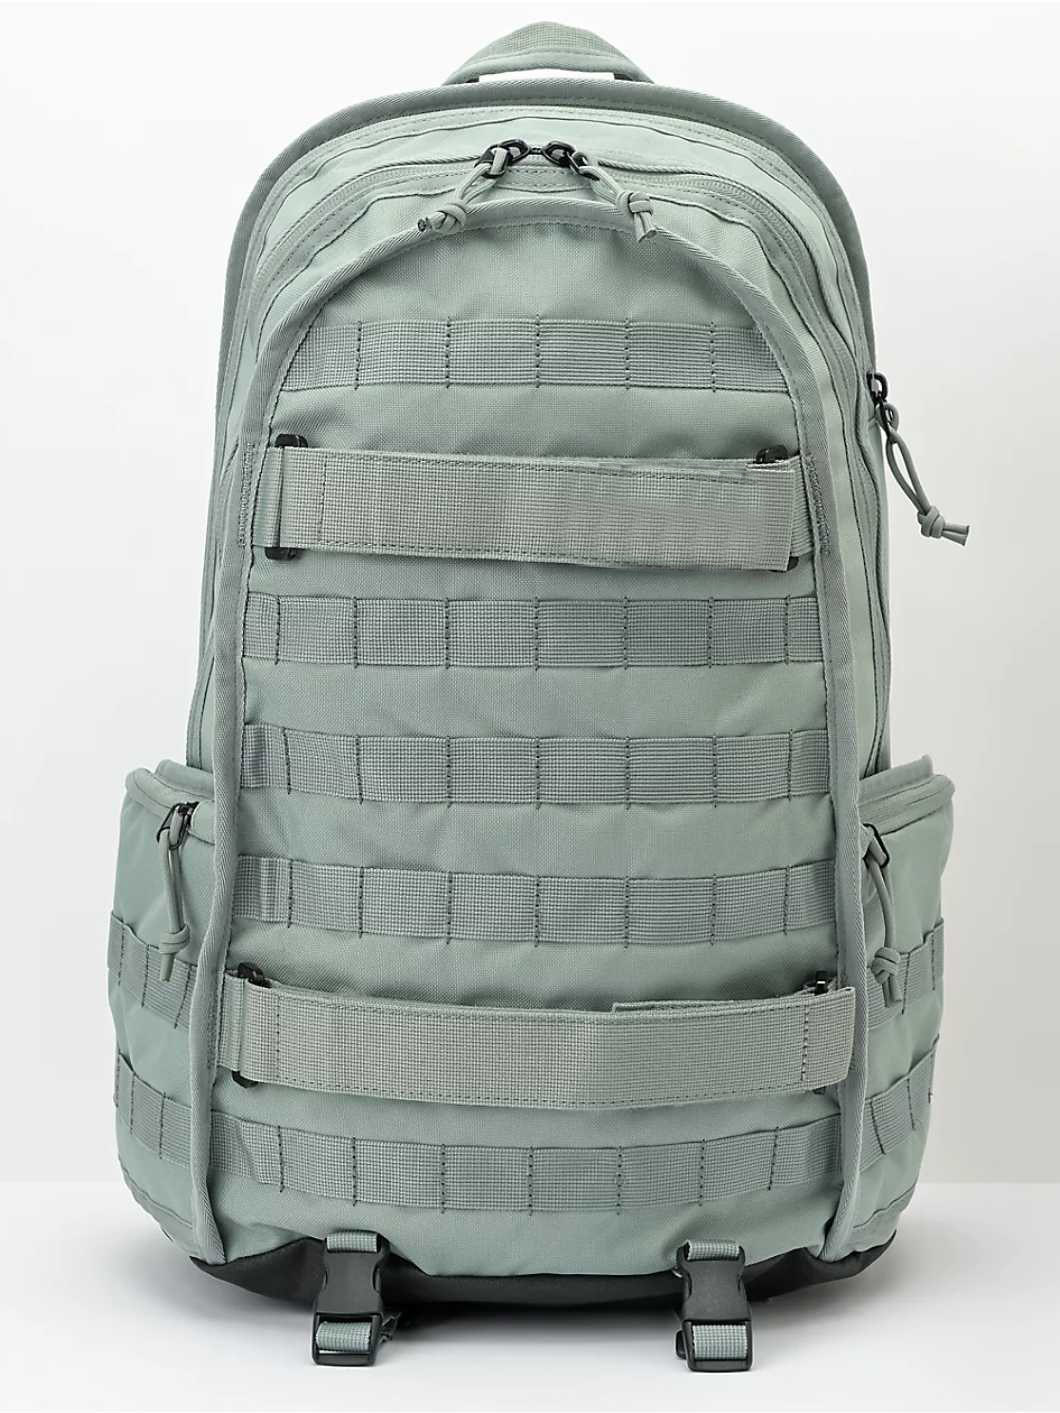 Durable 25L Travel Backpack Desk Skateboard Bag Supplier